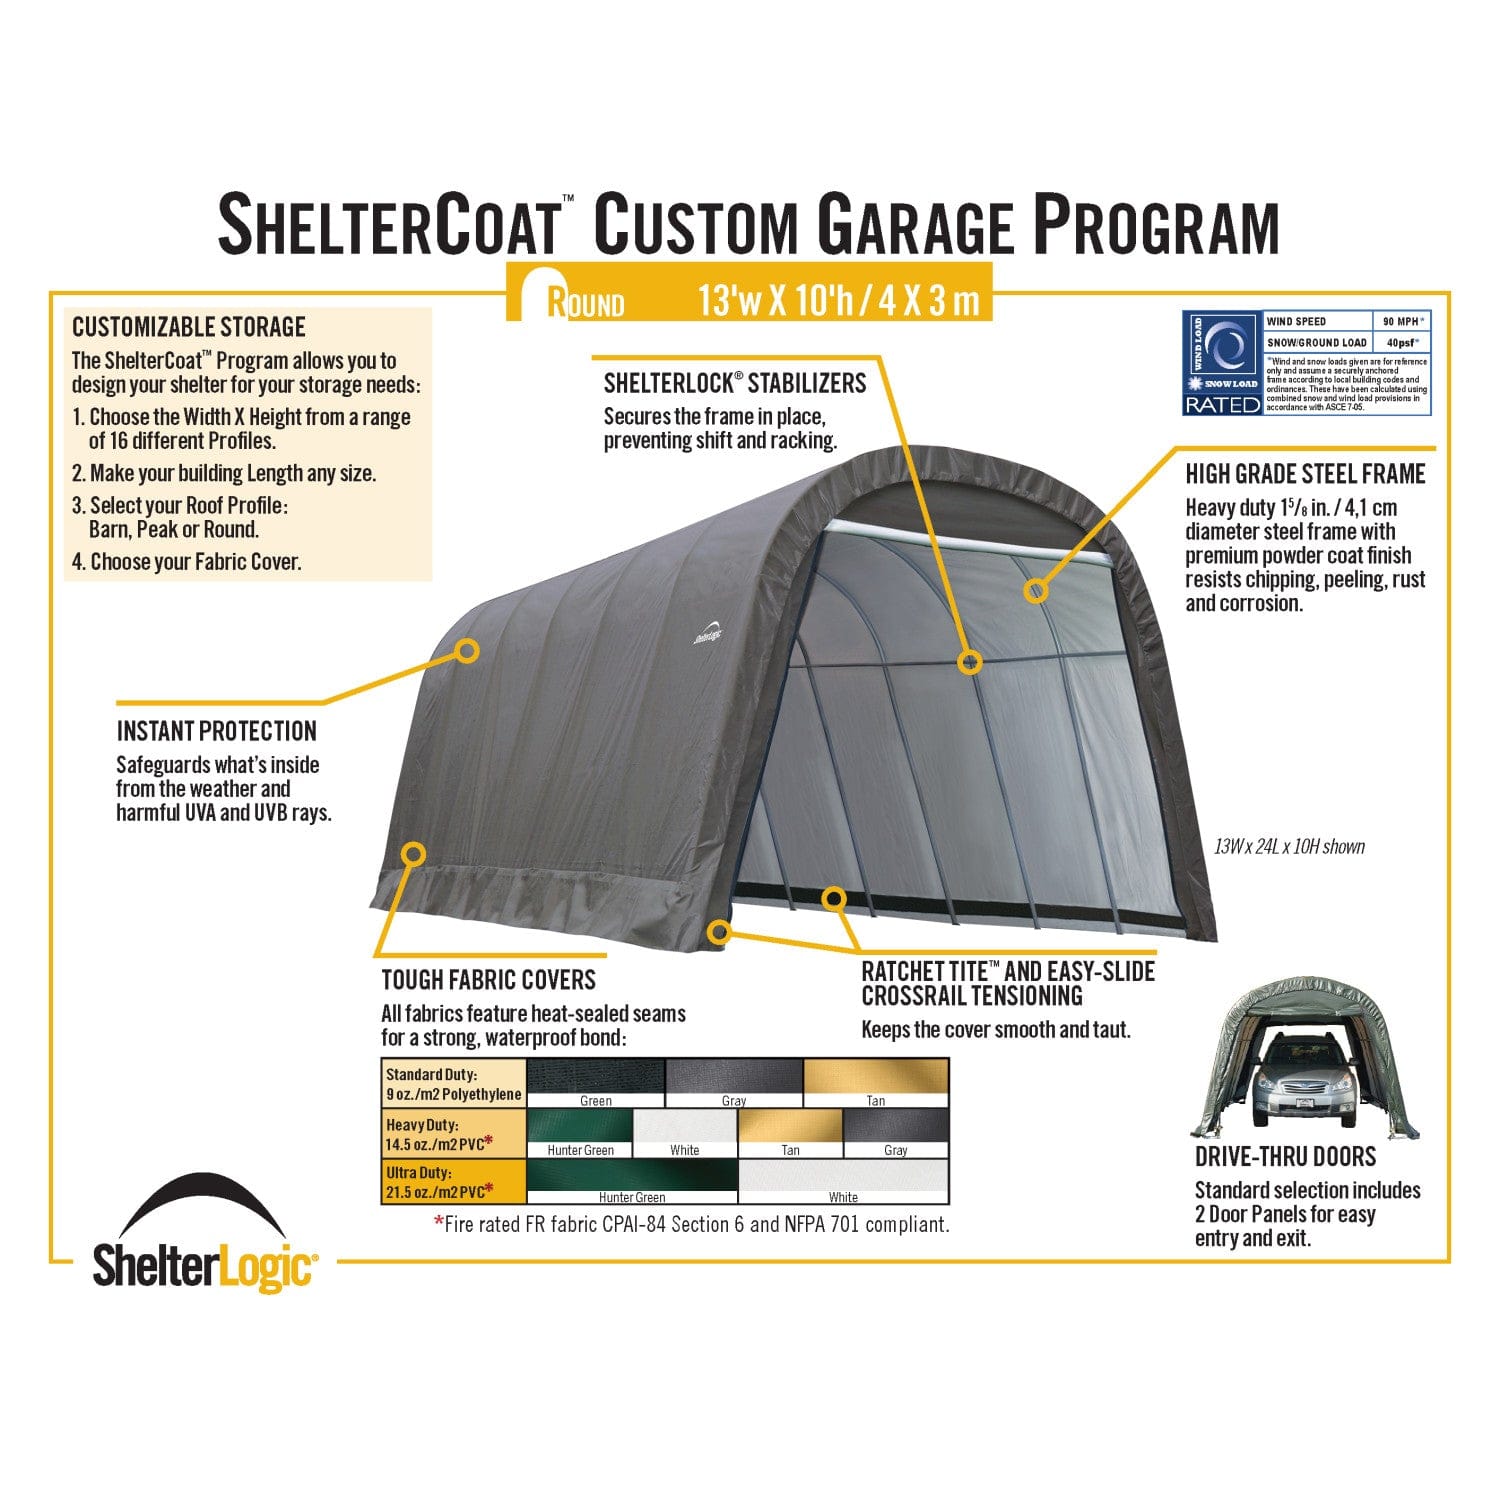 ShelterLogic Portable Garage ShelterLogic | ShelterCoat 13 x 24 ft. Wind and Snow Rated Garage Round Gray STD 74332